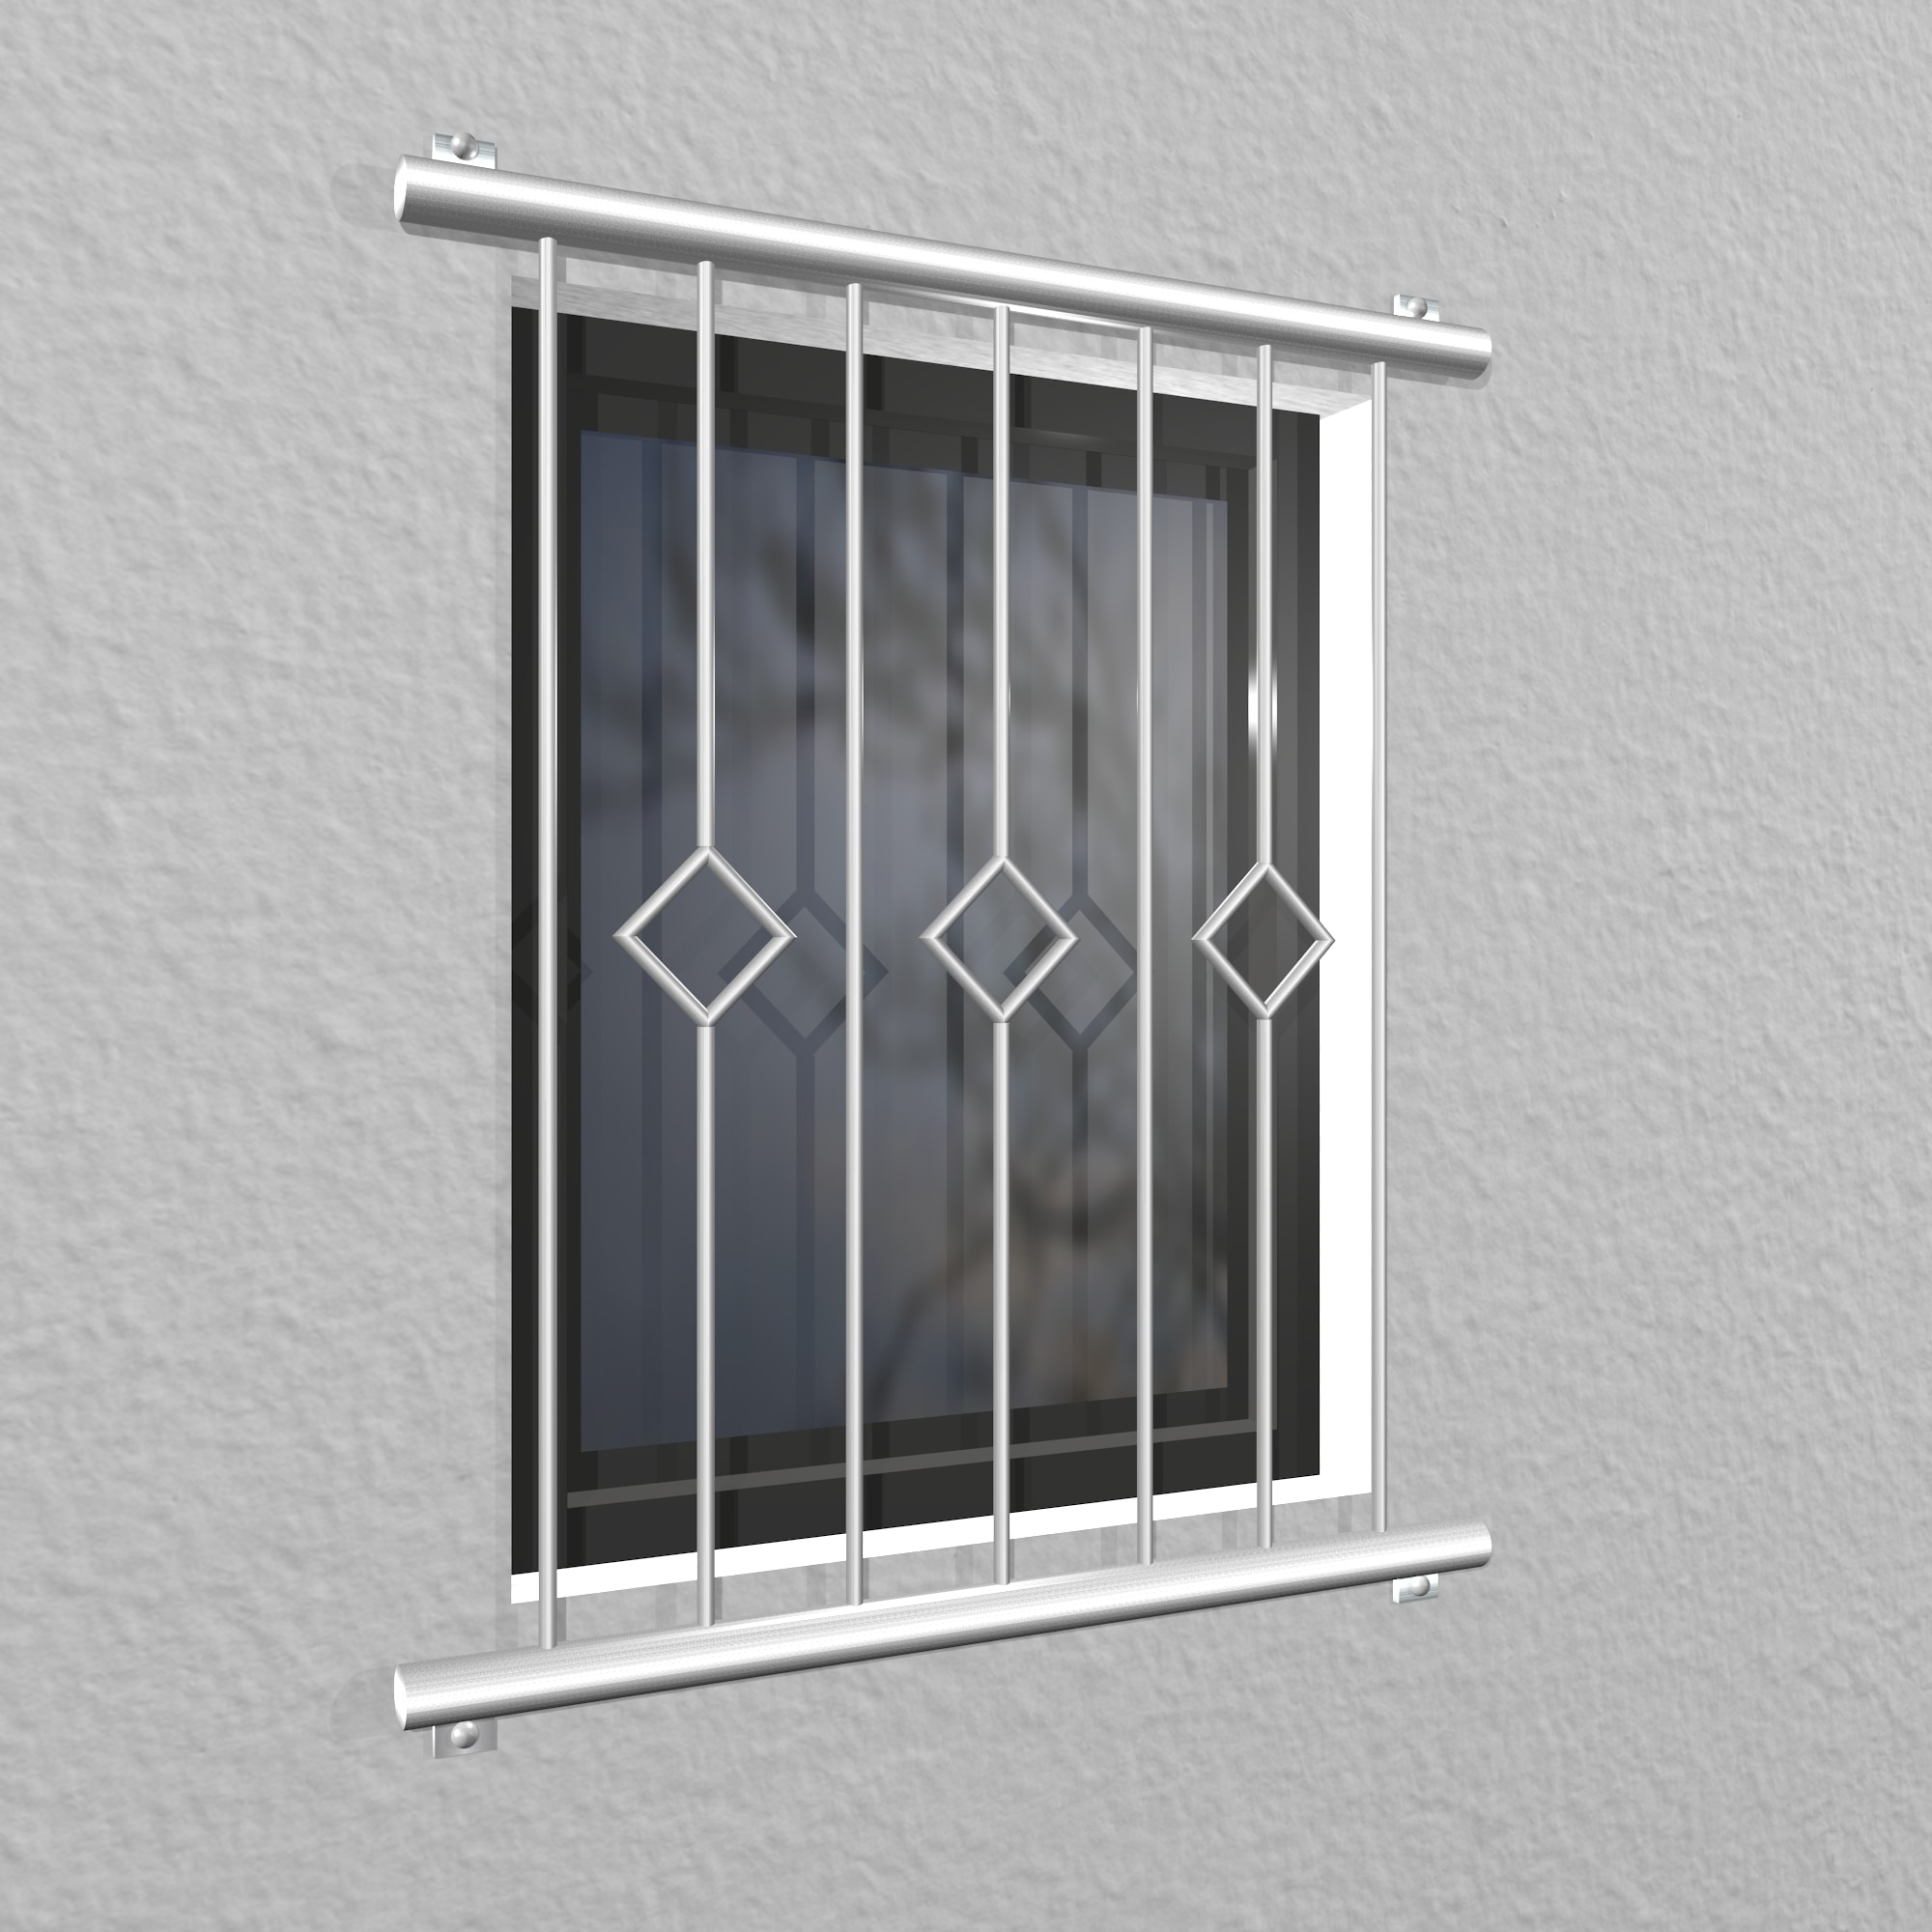 Grille de défense pour fenêtres en acier inoxydable carreau barre 2